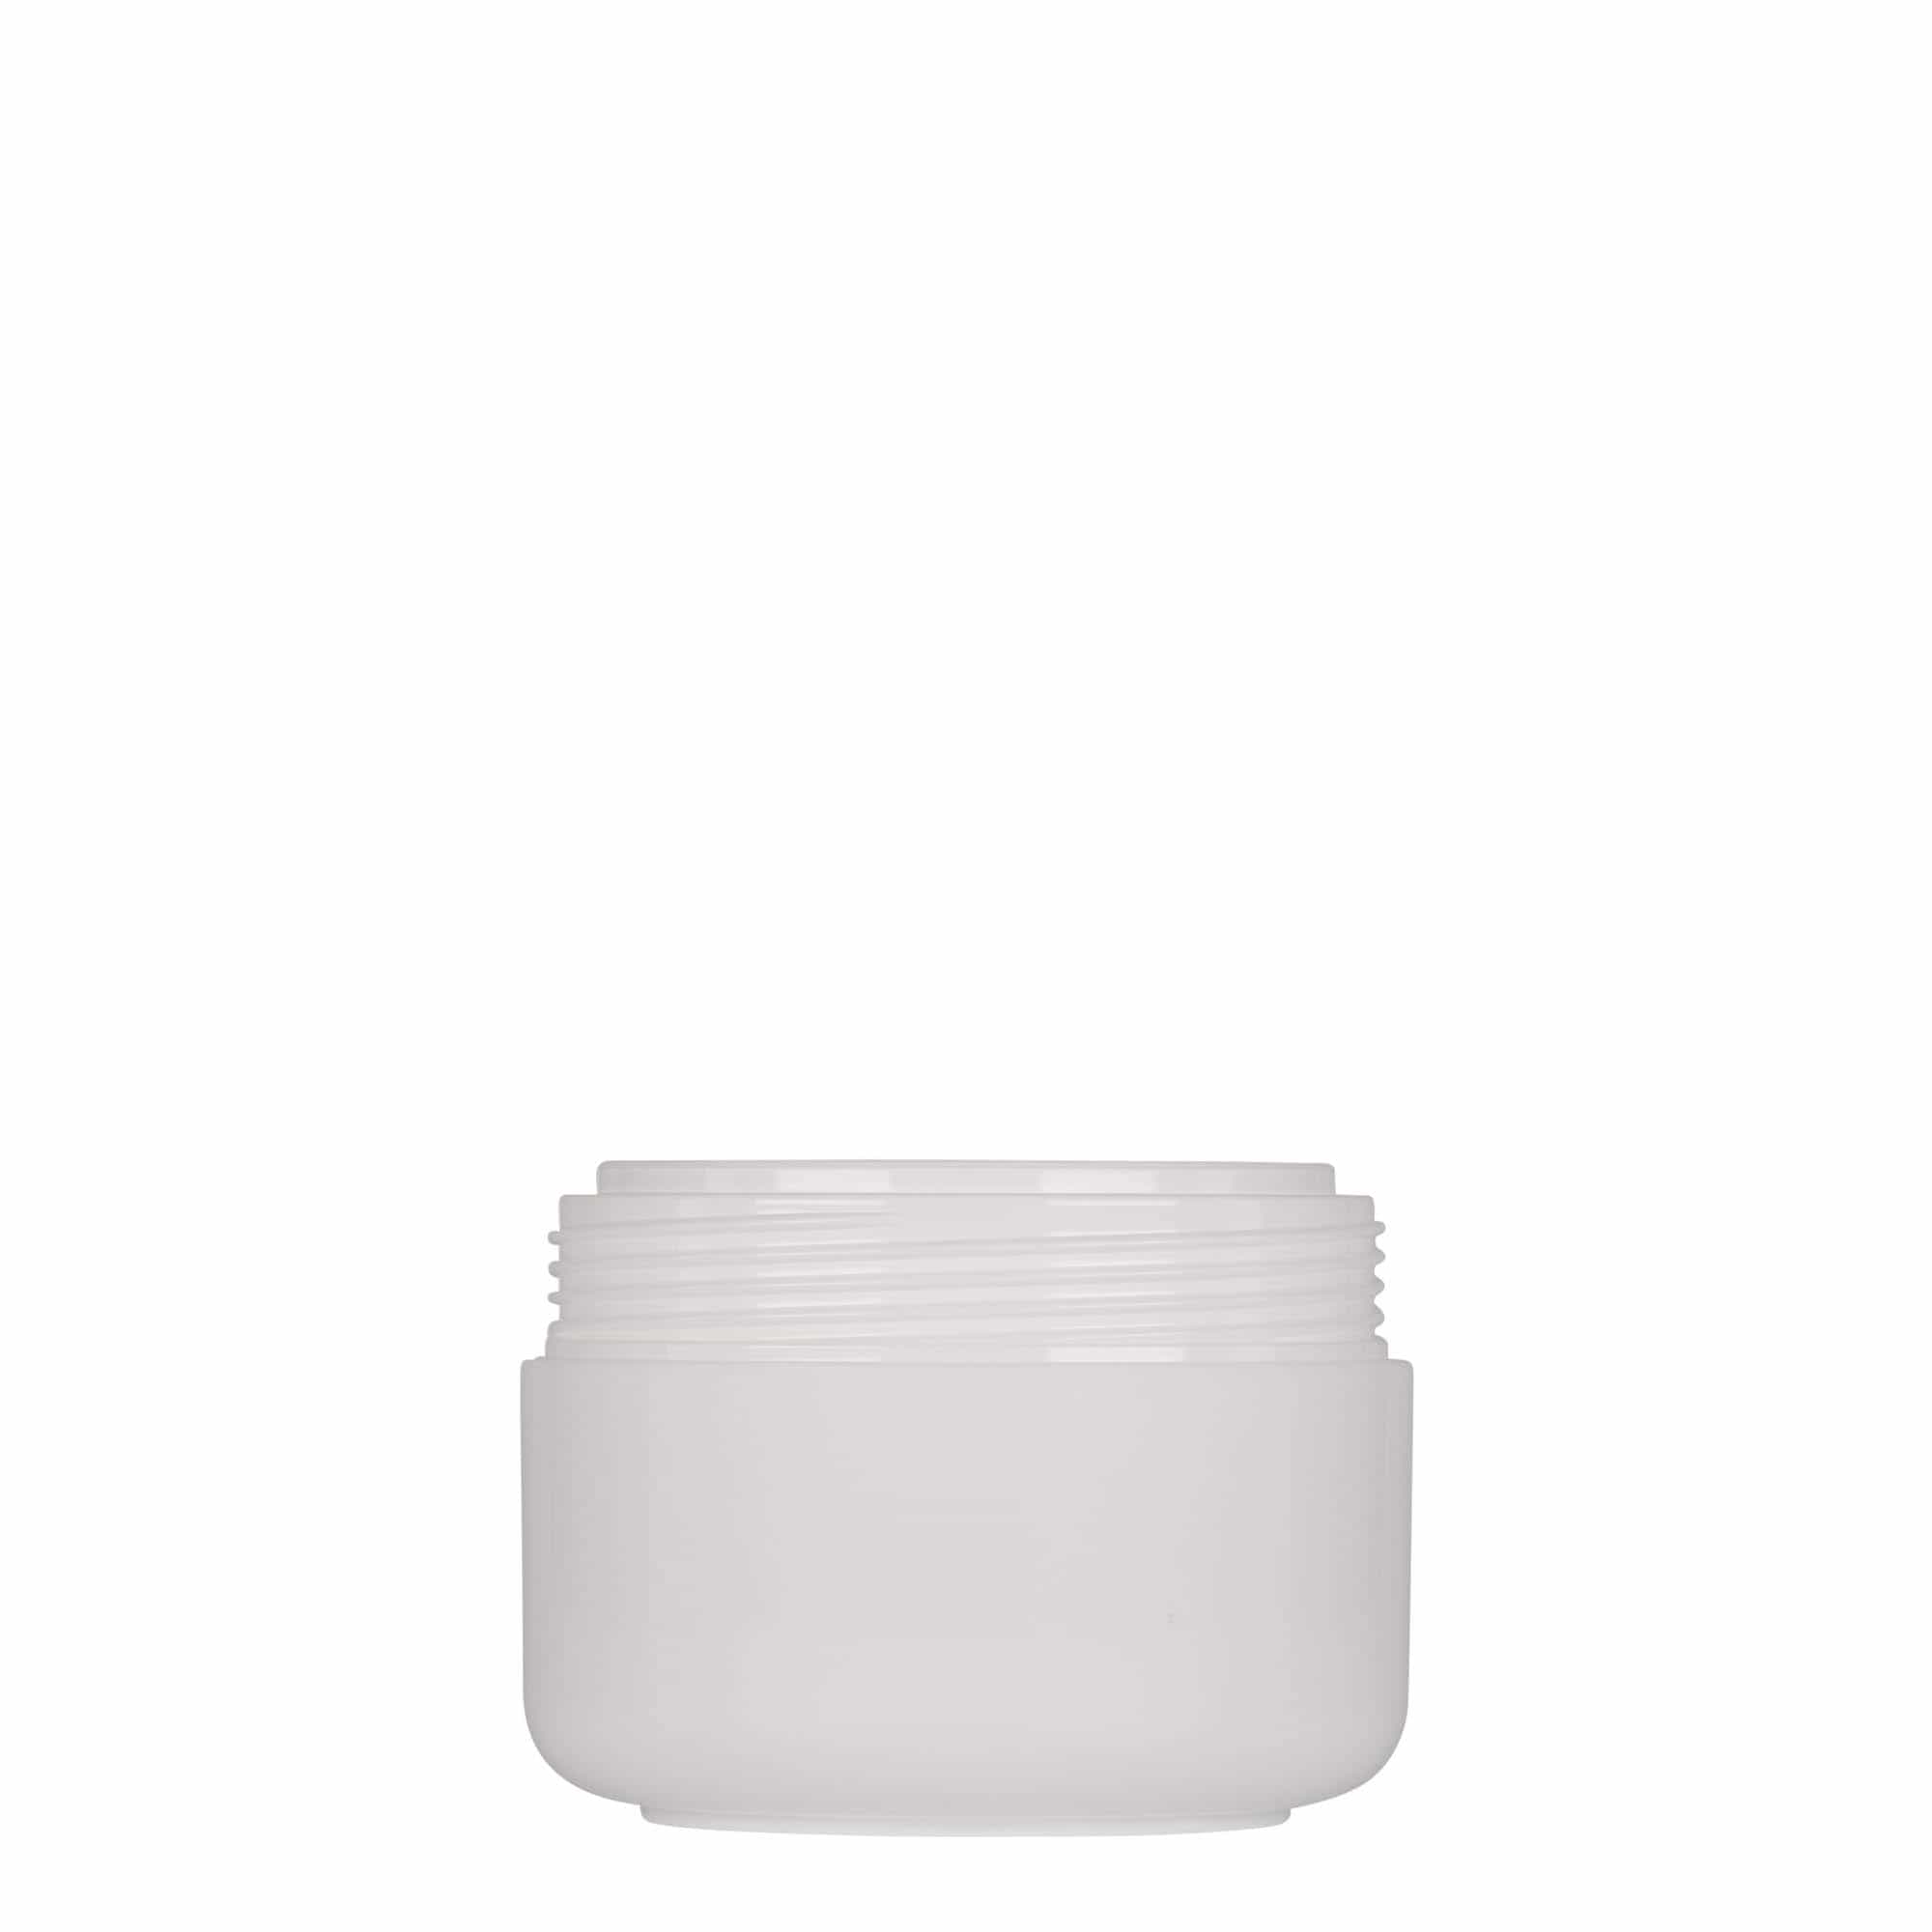 100 ml plastic jar 'Bianca', PP, white, closure: screw cap